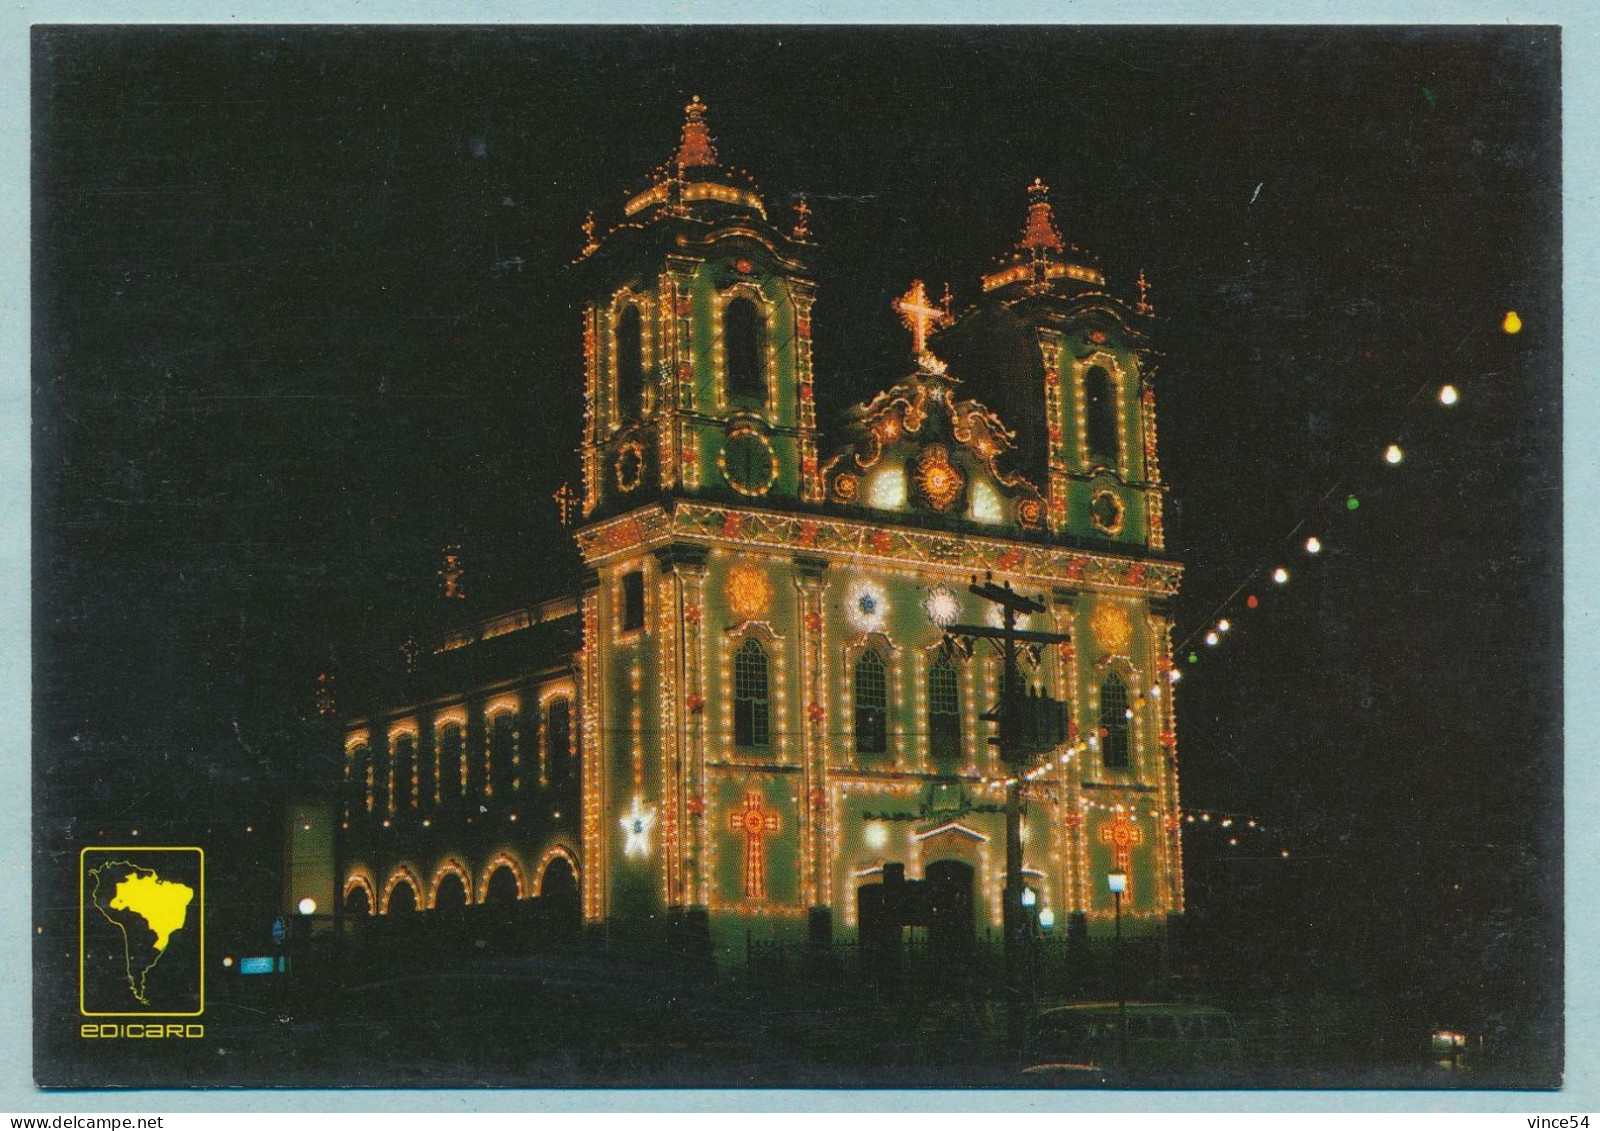 SALVADOR De Bahia - Fachada Iluminada Da Igreja Senhor Do Bonfim - Salvador De Bahia